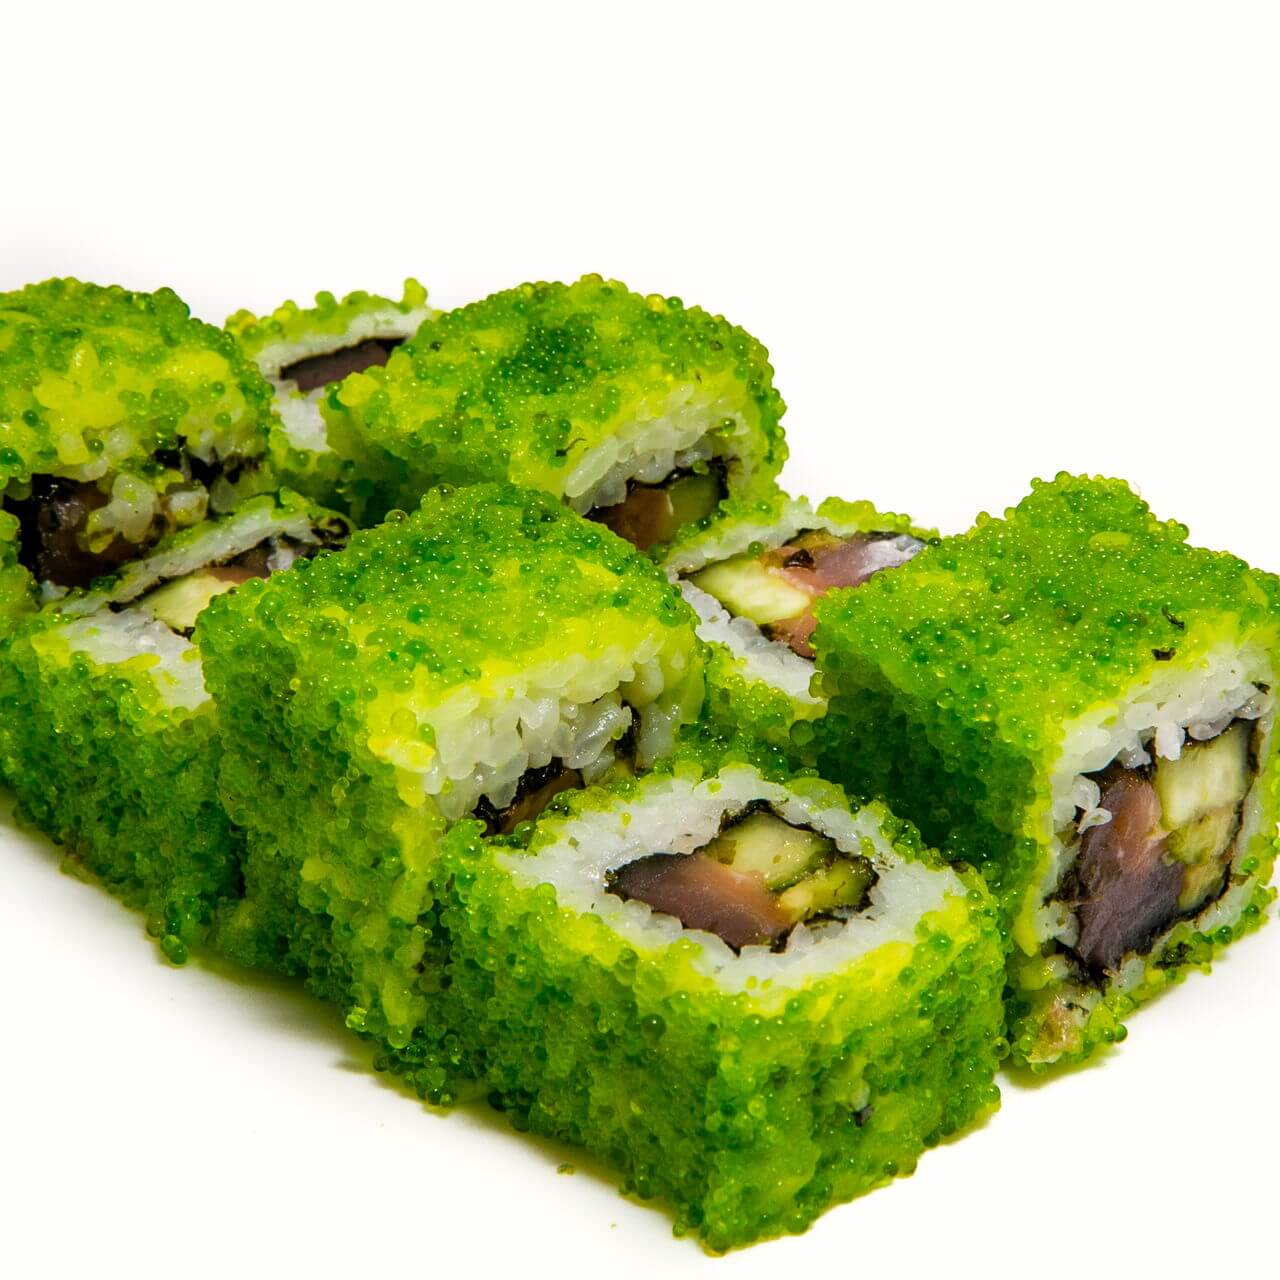 Вредны ли суши для здоровья